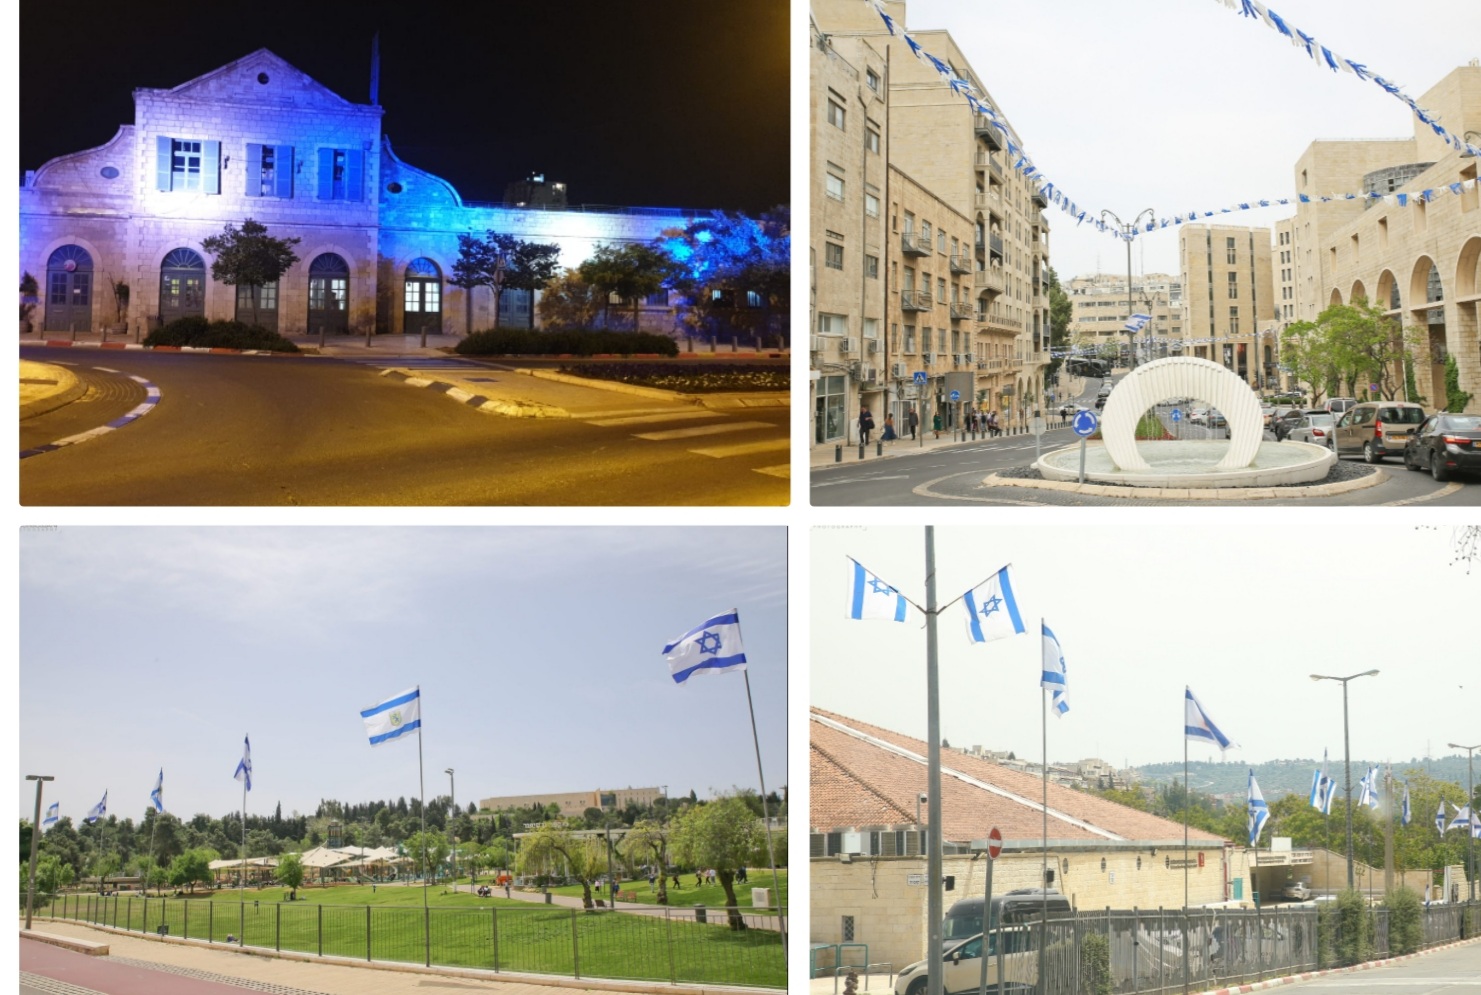 כ-17,000 דגלים וכ-70 ק"מ שרשראות דגלונים: ההכנות ליום העצמאות בירושלים